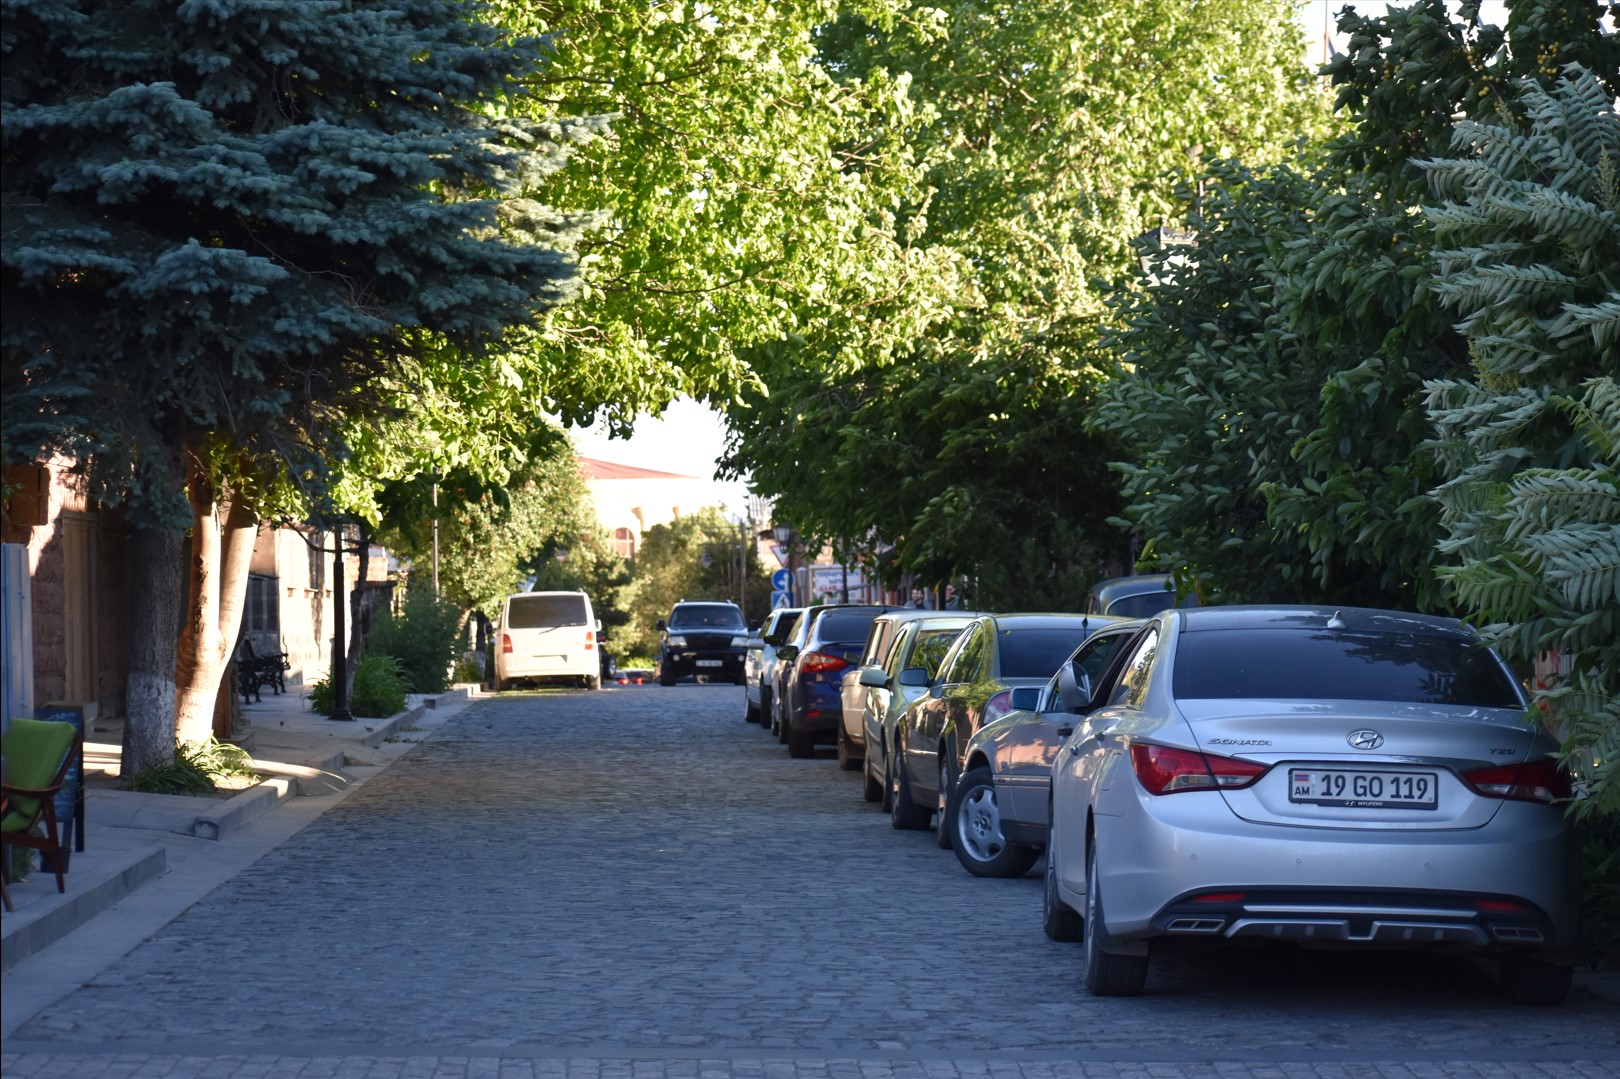 A beautiful street in Gyumri